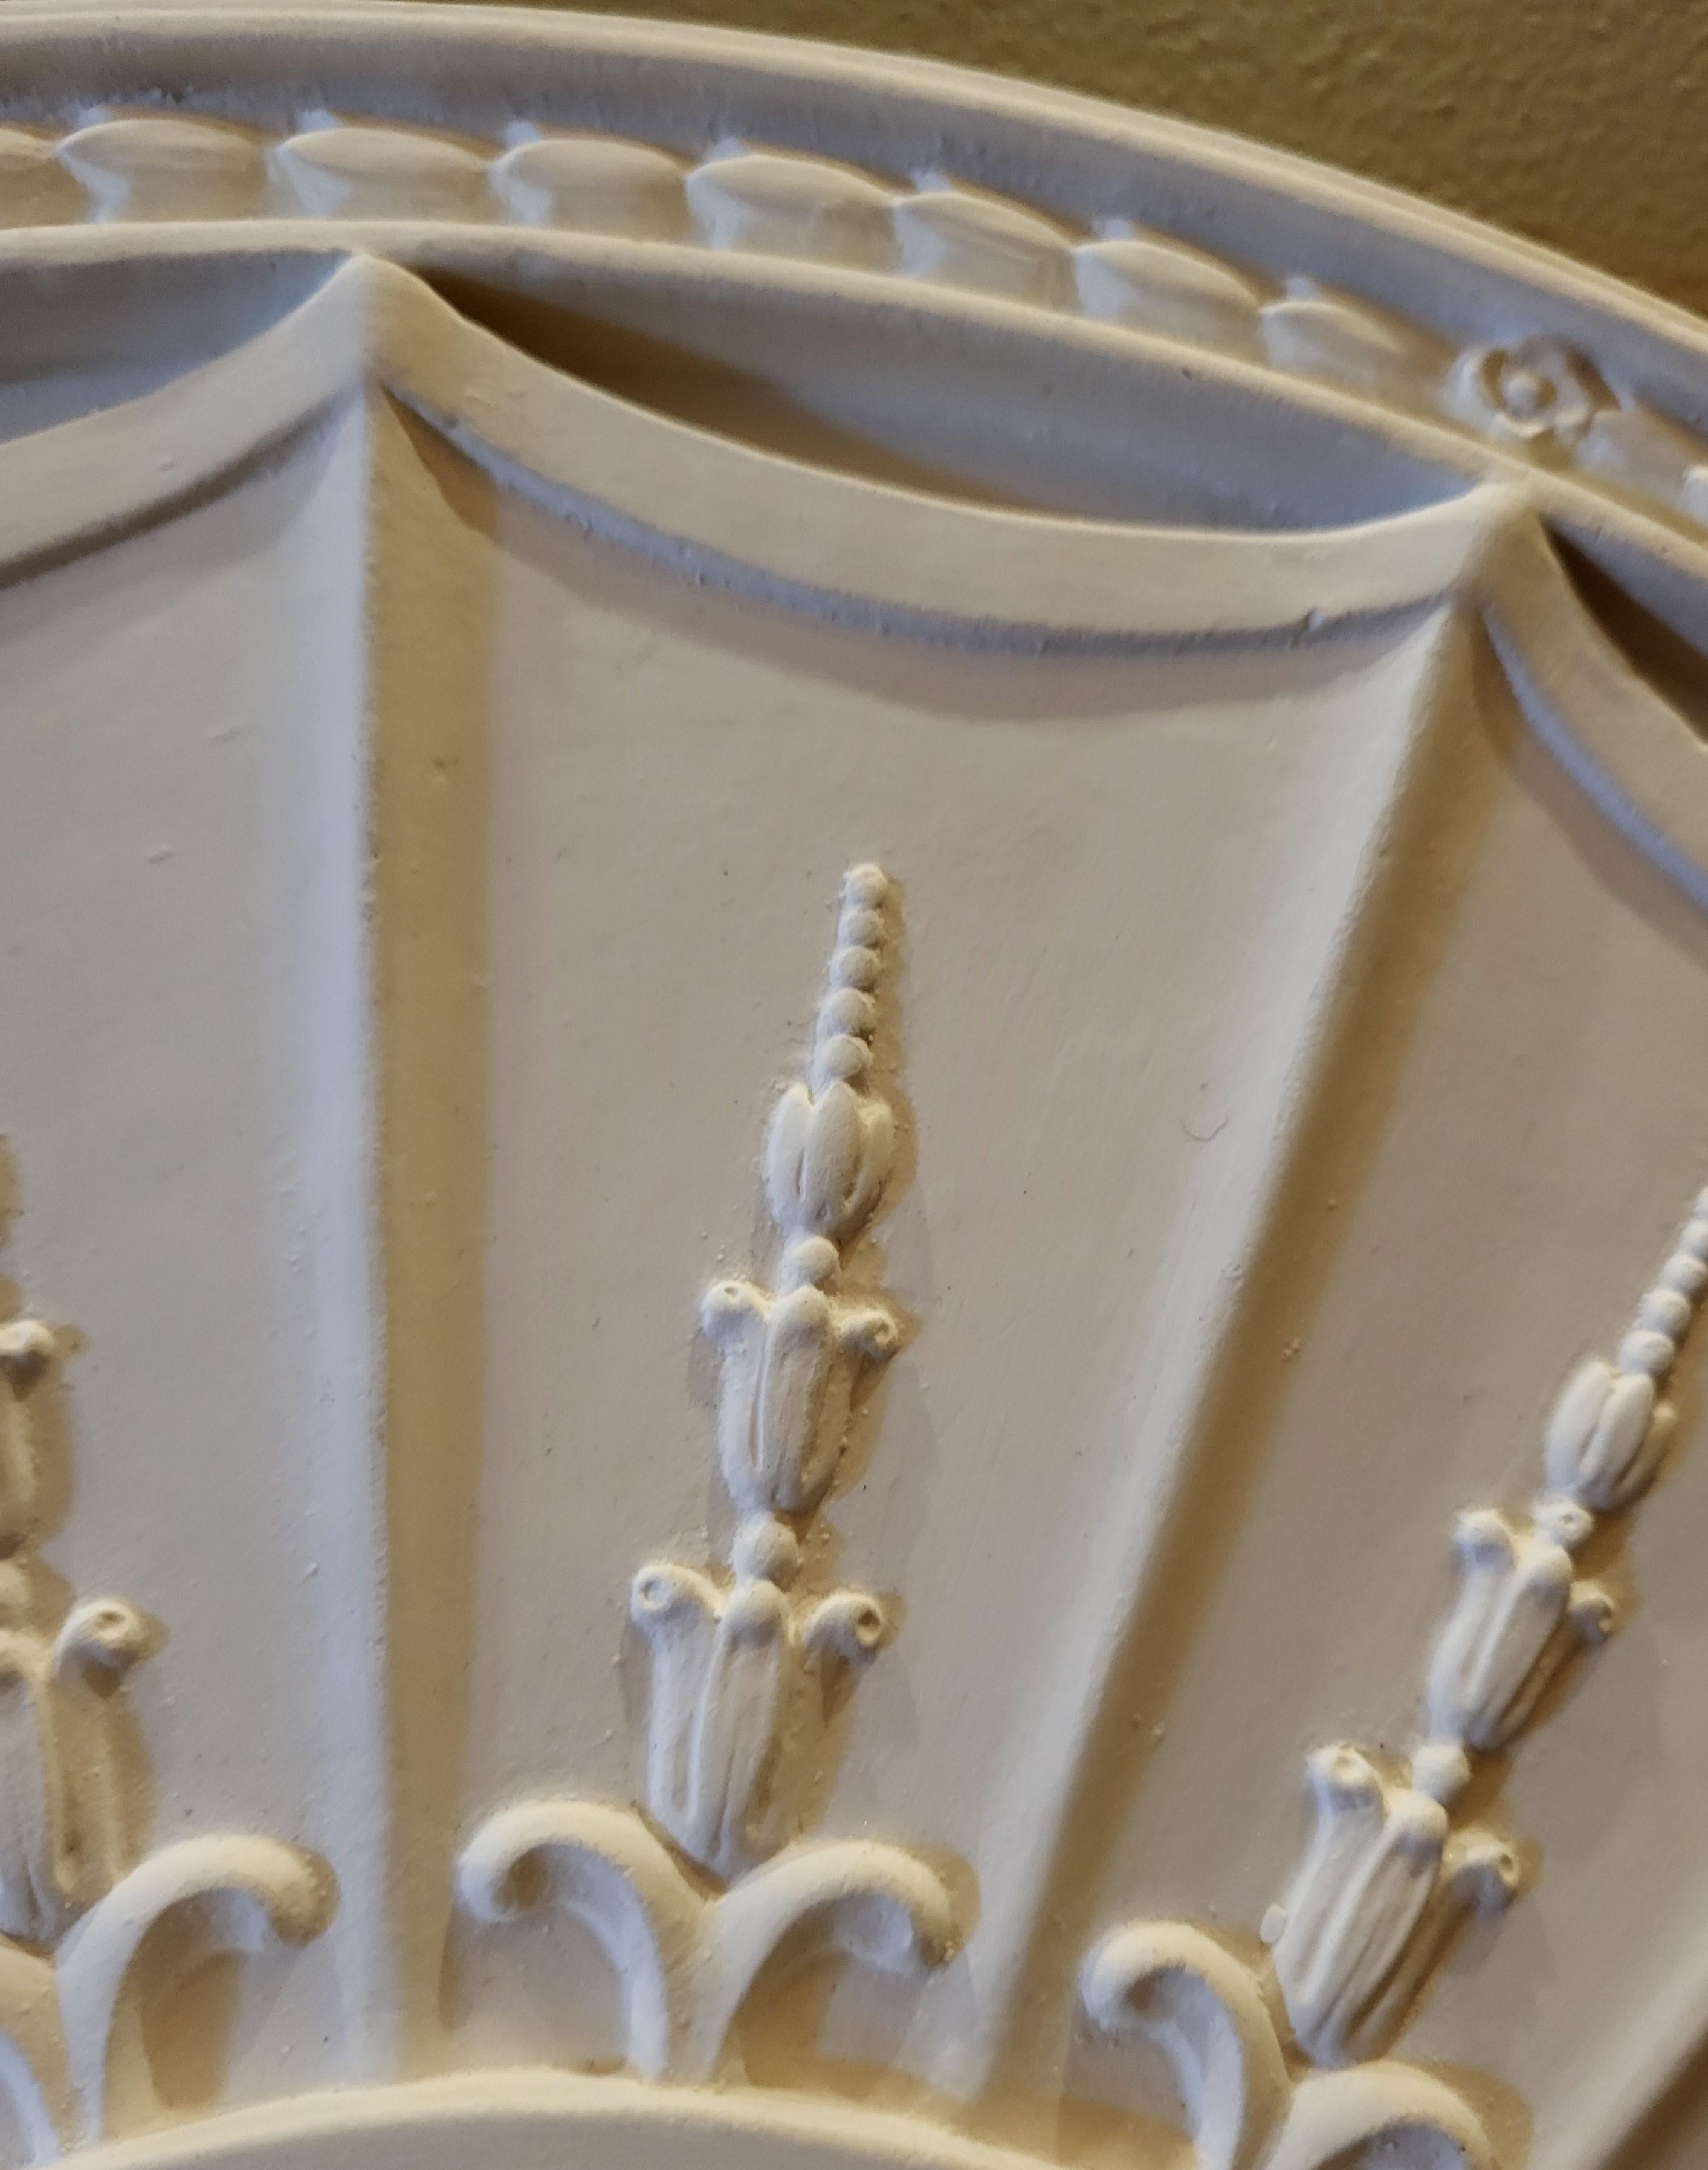 Ce médaillon de plafond en plâtre est coulé à la main par notre propre artisan à partir d'un moule réalisé sur un médaillon ancien (vers 1790) dans une maison d'époque. Les 16 segments à bord festonné, chacun orné de lances en bas-relief de